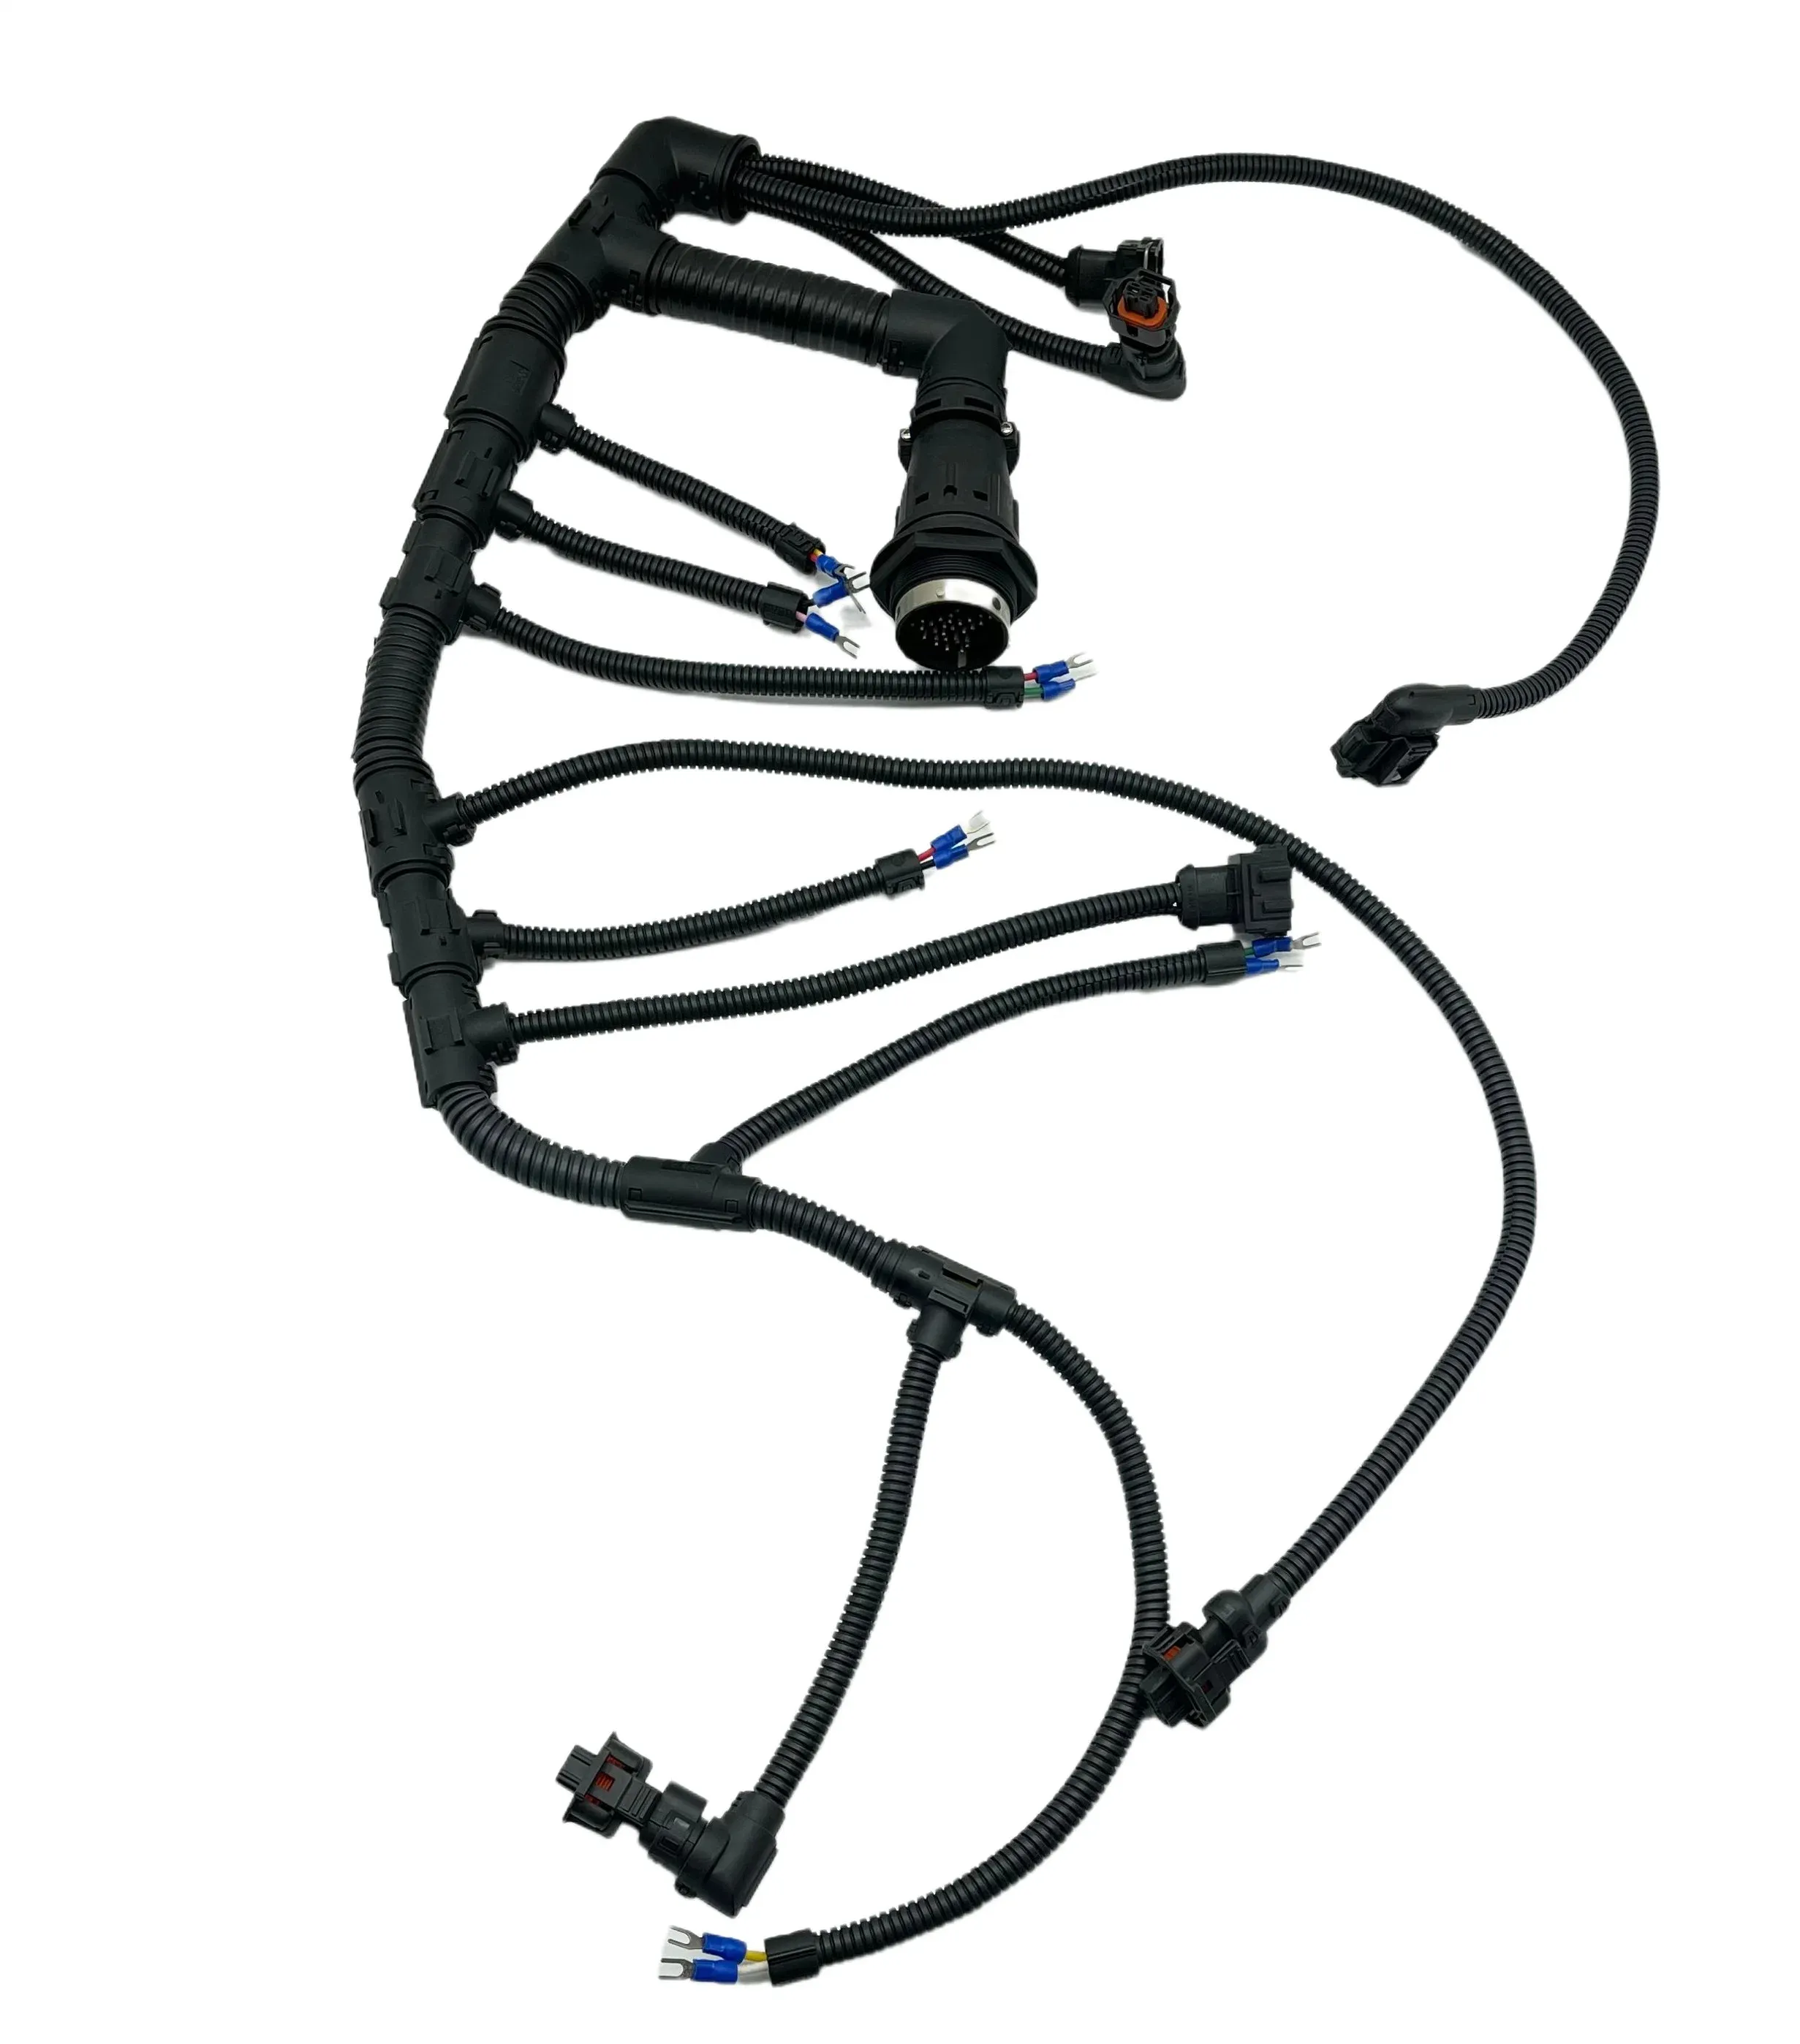 Odm жгут проводов автомобильный жгут проводов Автомобильная приборная панель дисплей внутренняя часть пользовательских автомобильных проводов кабель